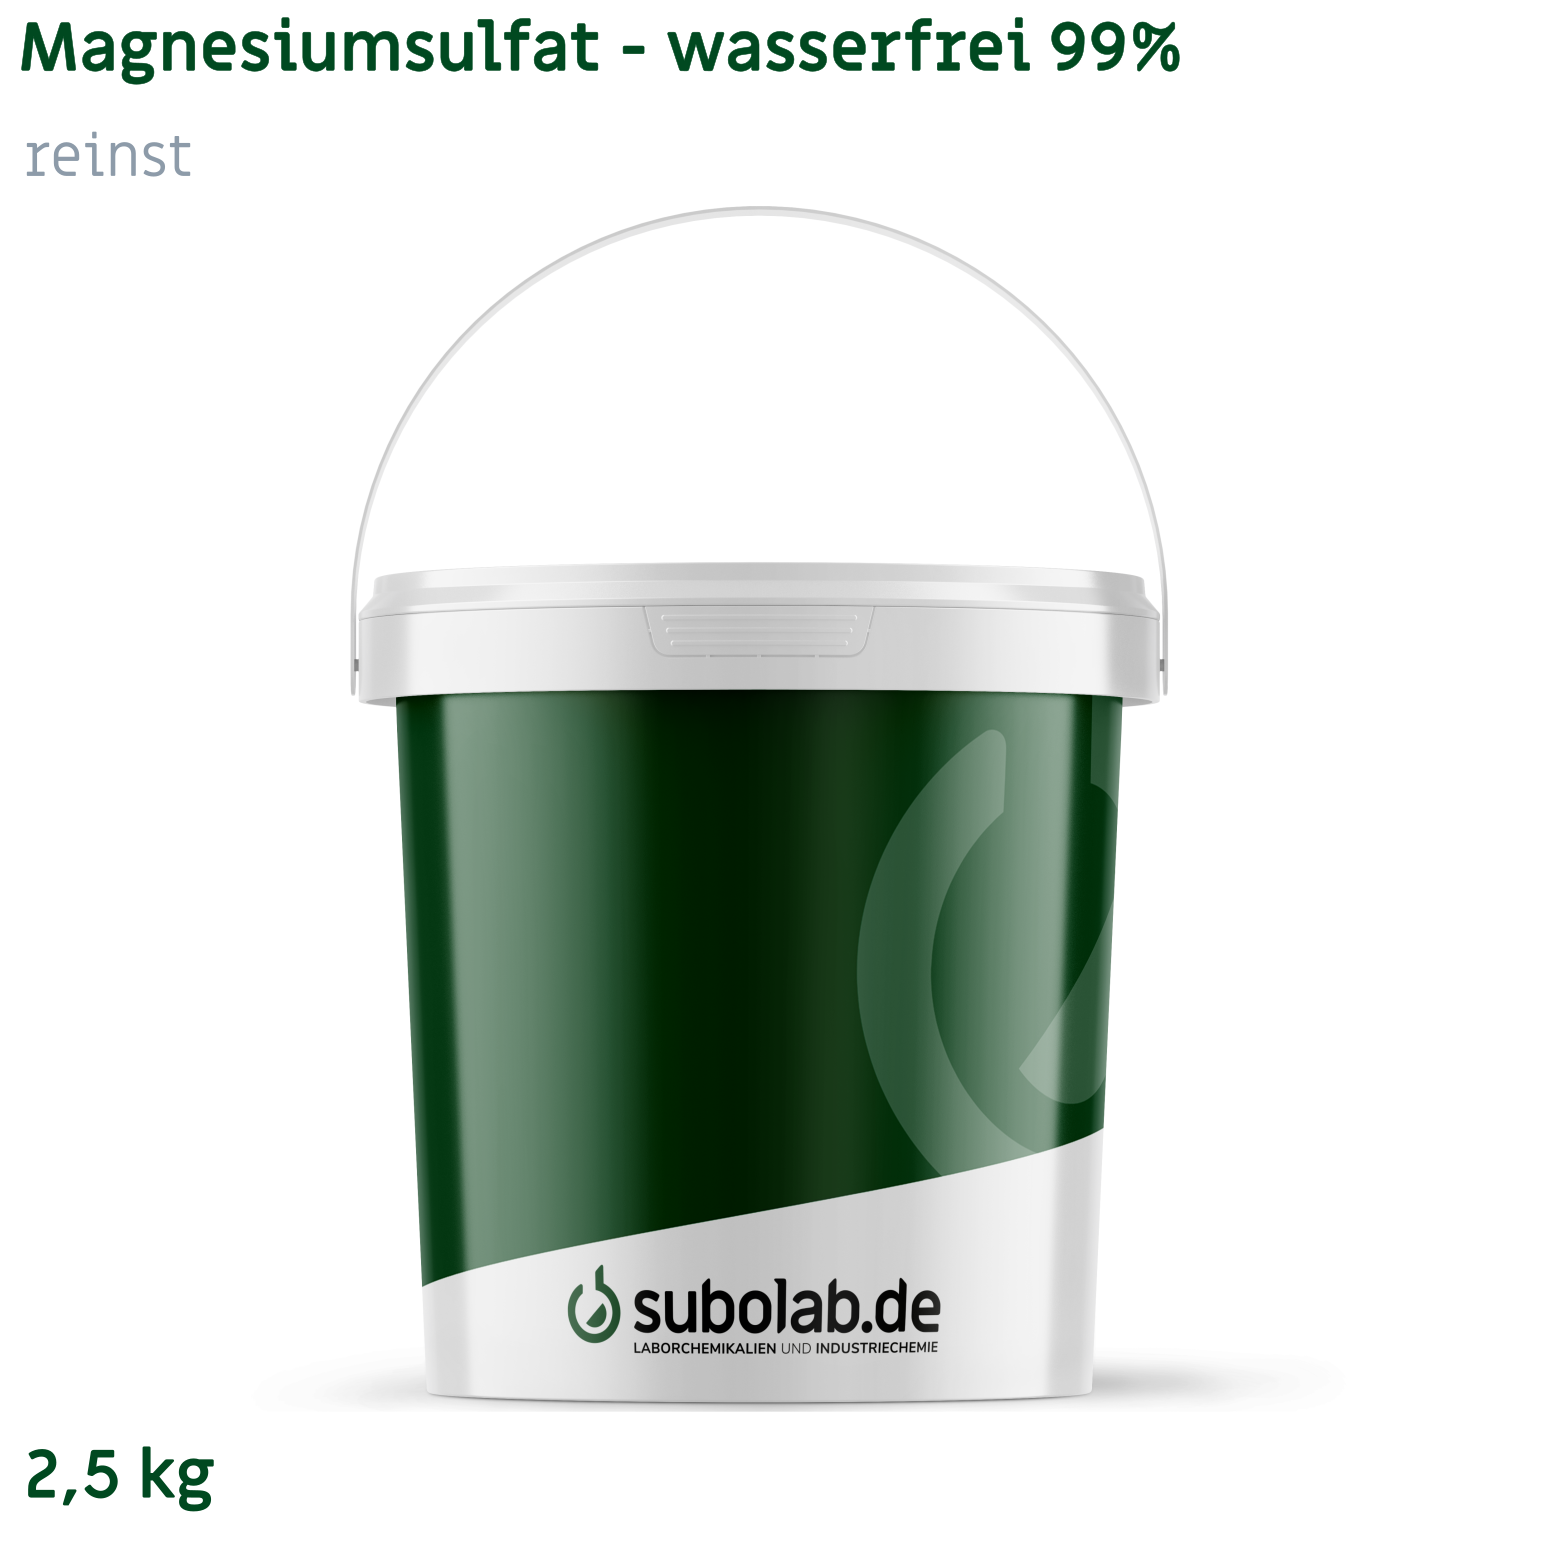 Bild von Magnesiumsulfat - wasserfrei 99% reinst (2,5 kg)